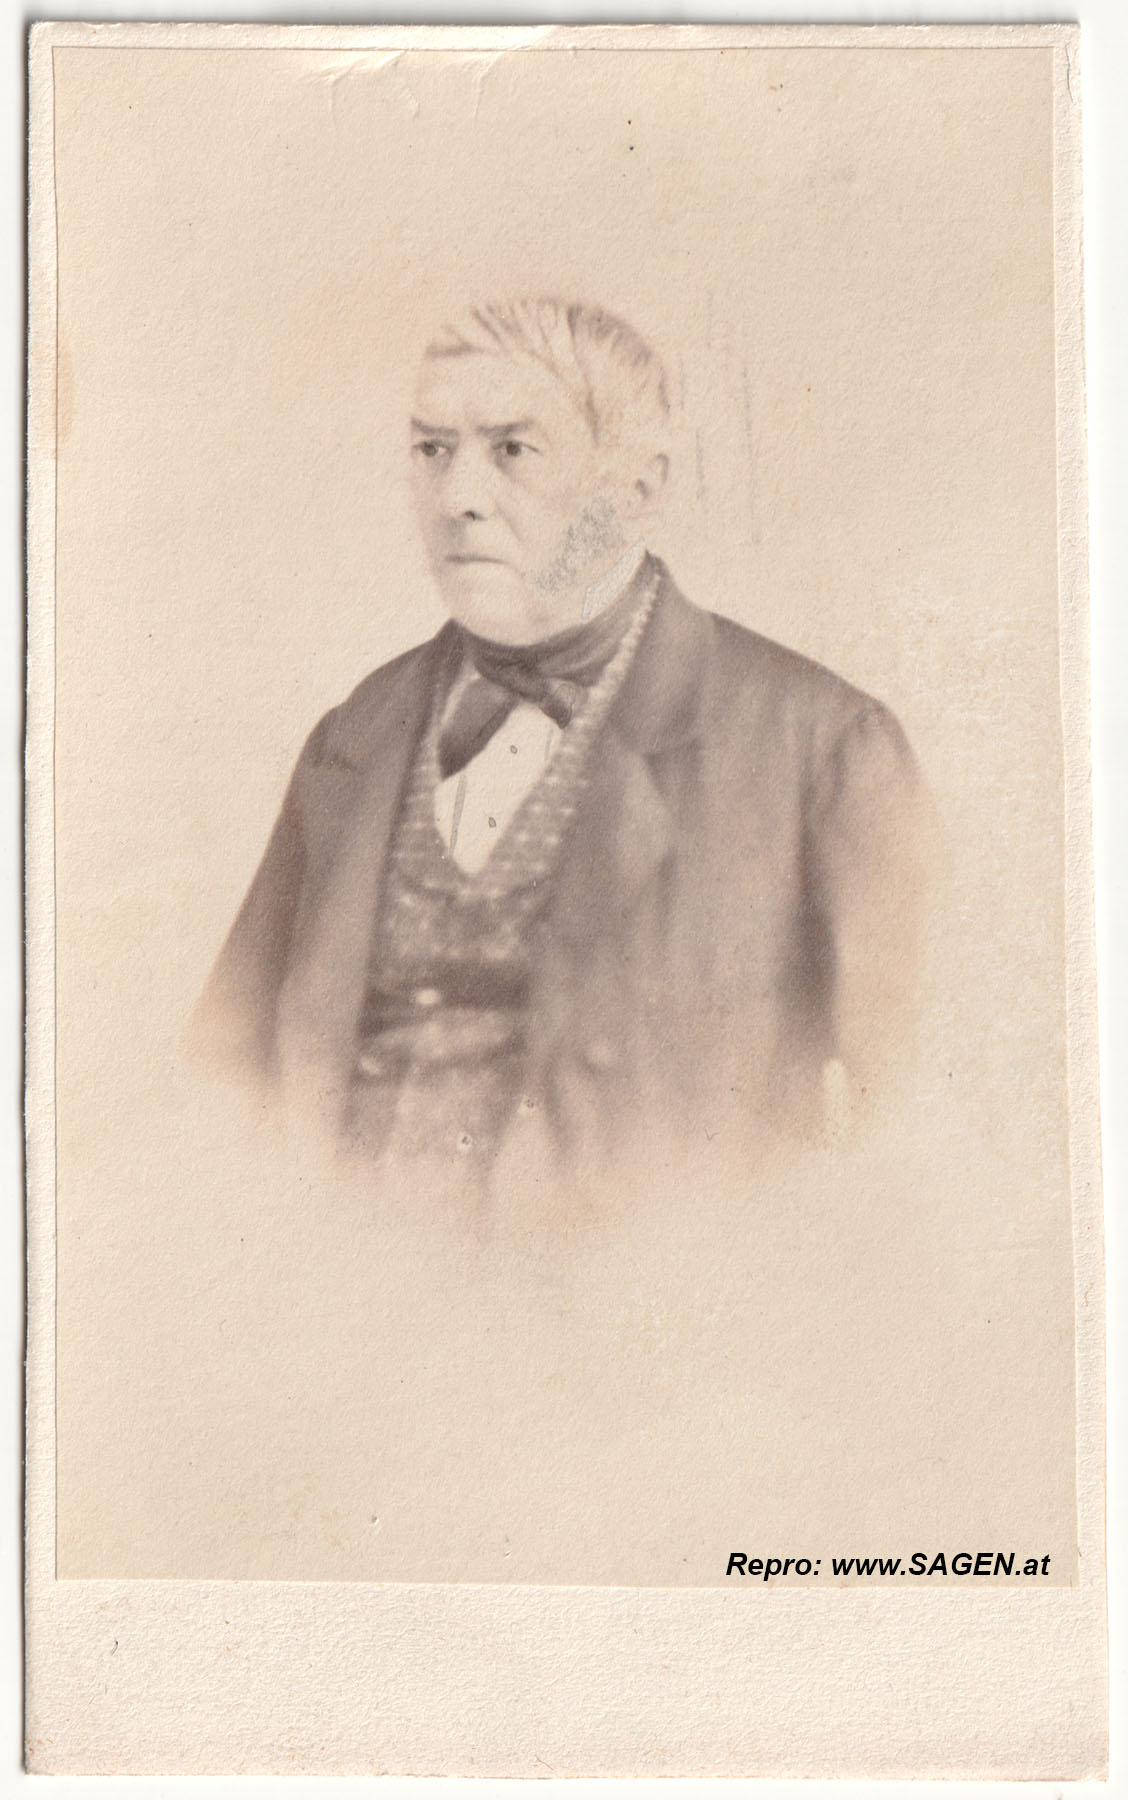 Herrenporträt 1860er Jahre